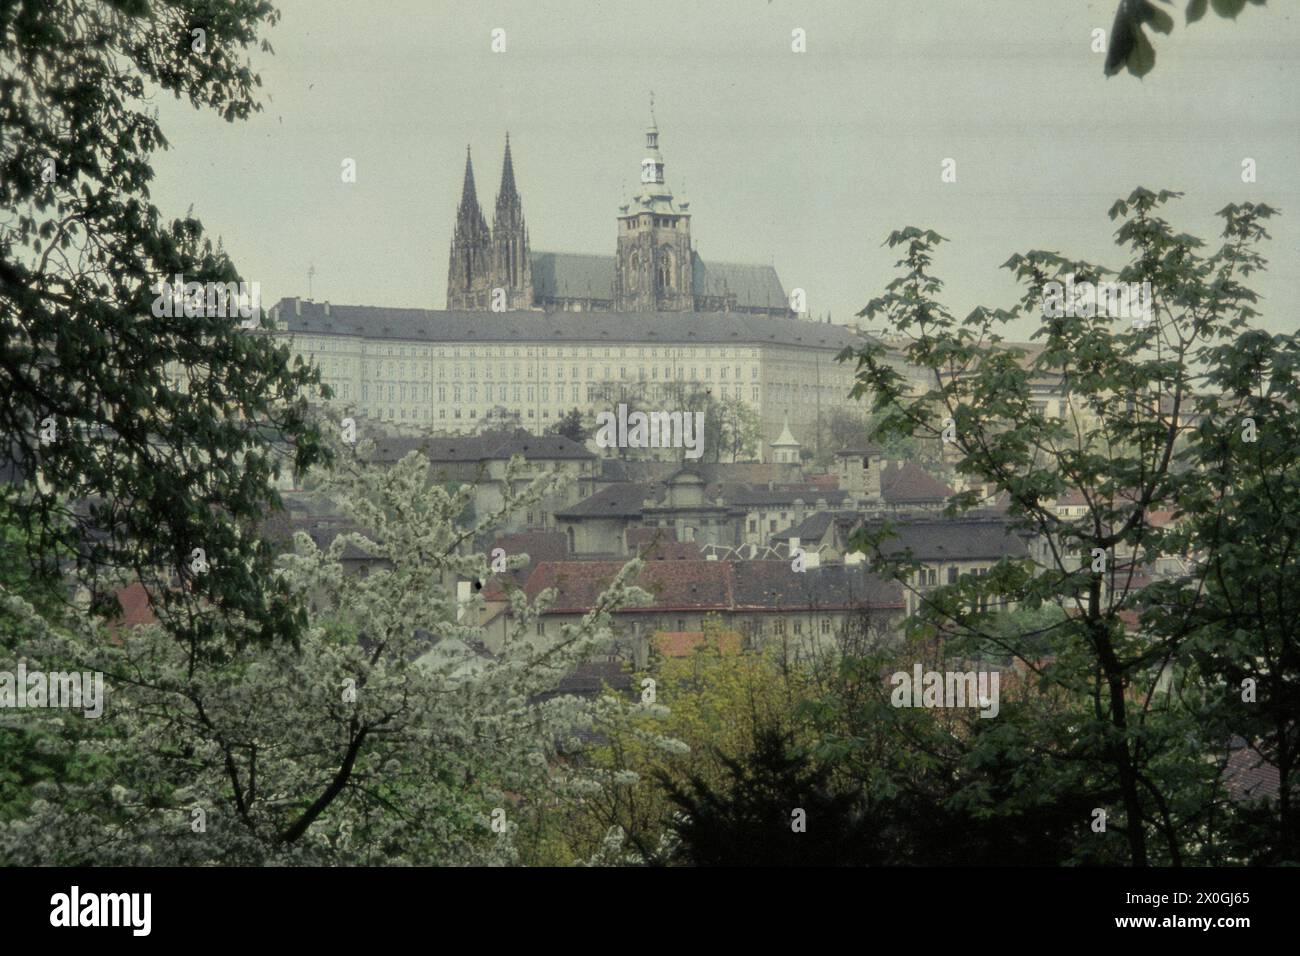 Hradschin von der Botschaft der USA, Prag, Tschechien [automatisierte Übersetzung] Stockfoto